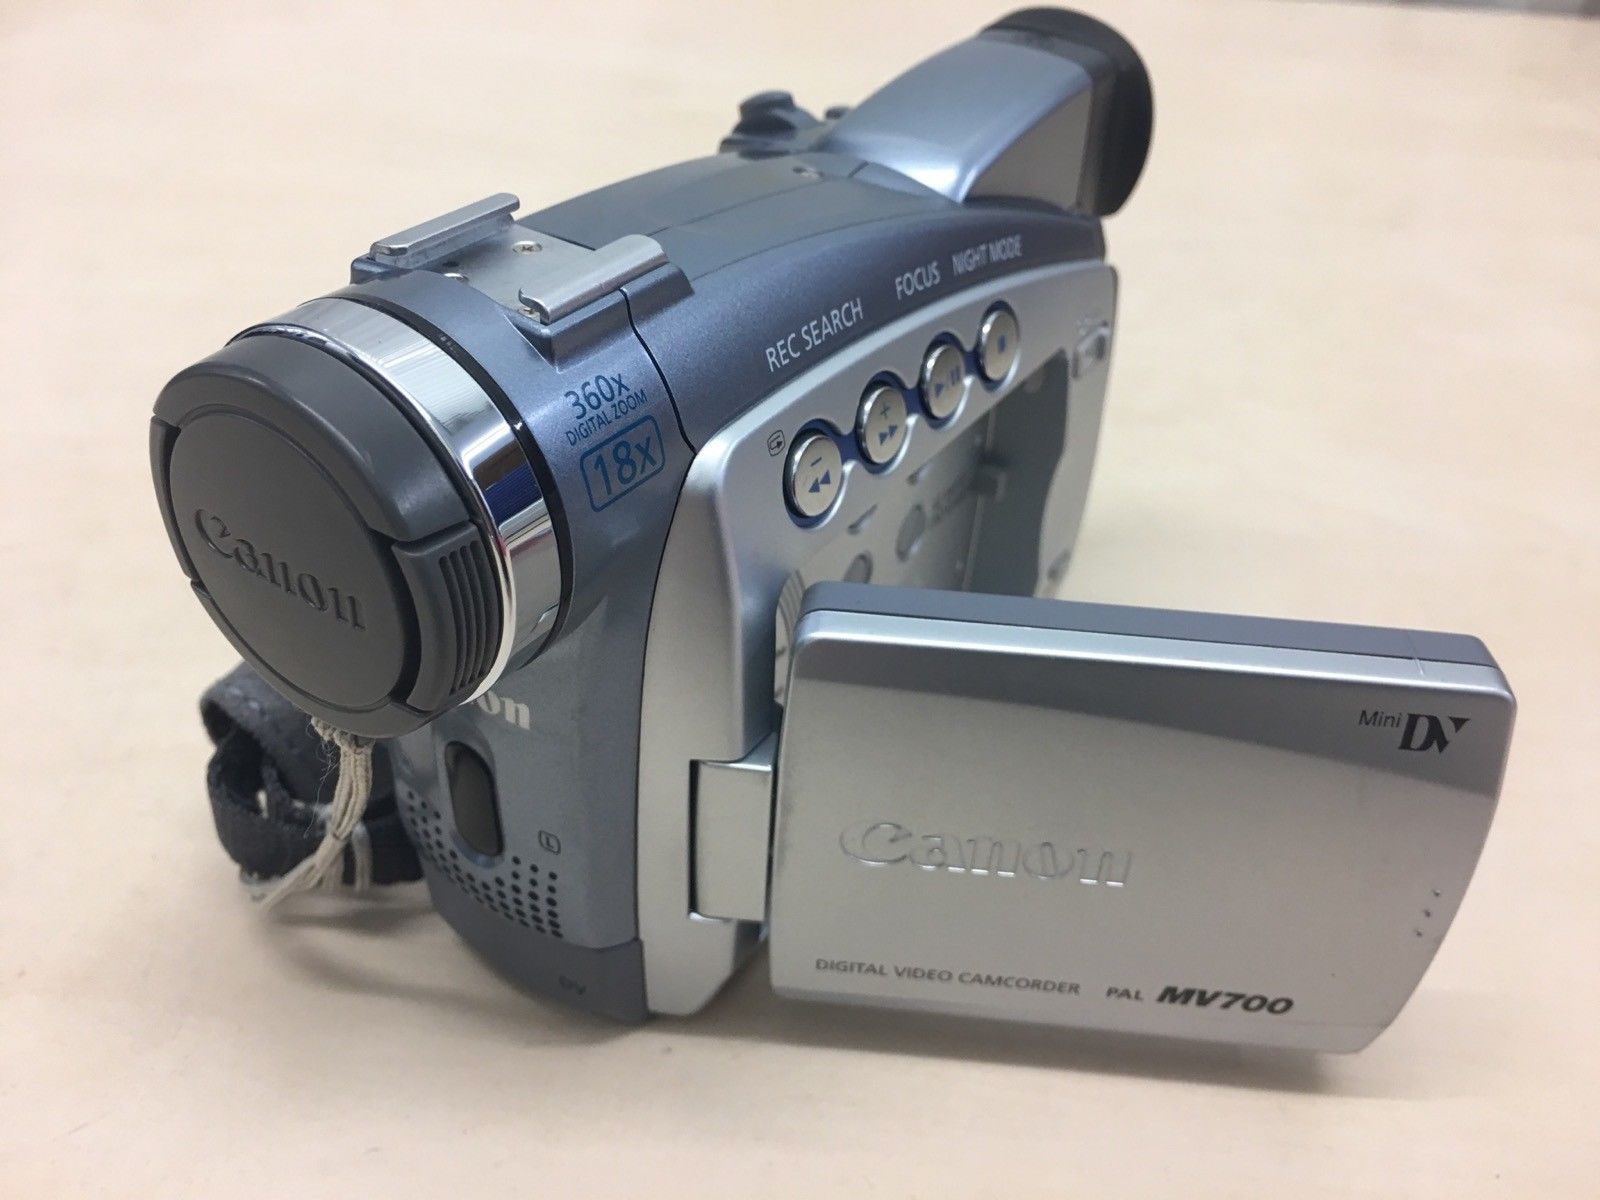 Canon MV700 Camcorder Mini DV Digital Tape Video Camera | eBay